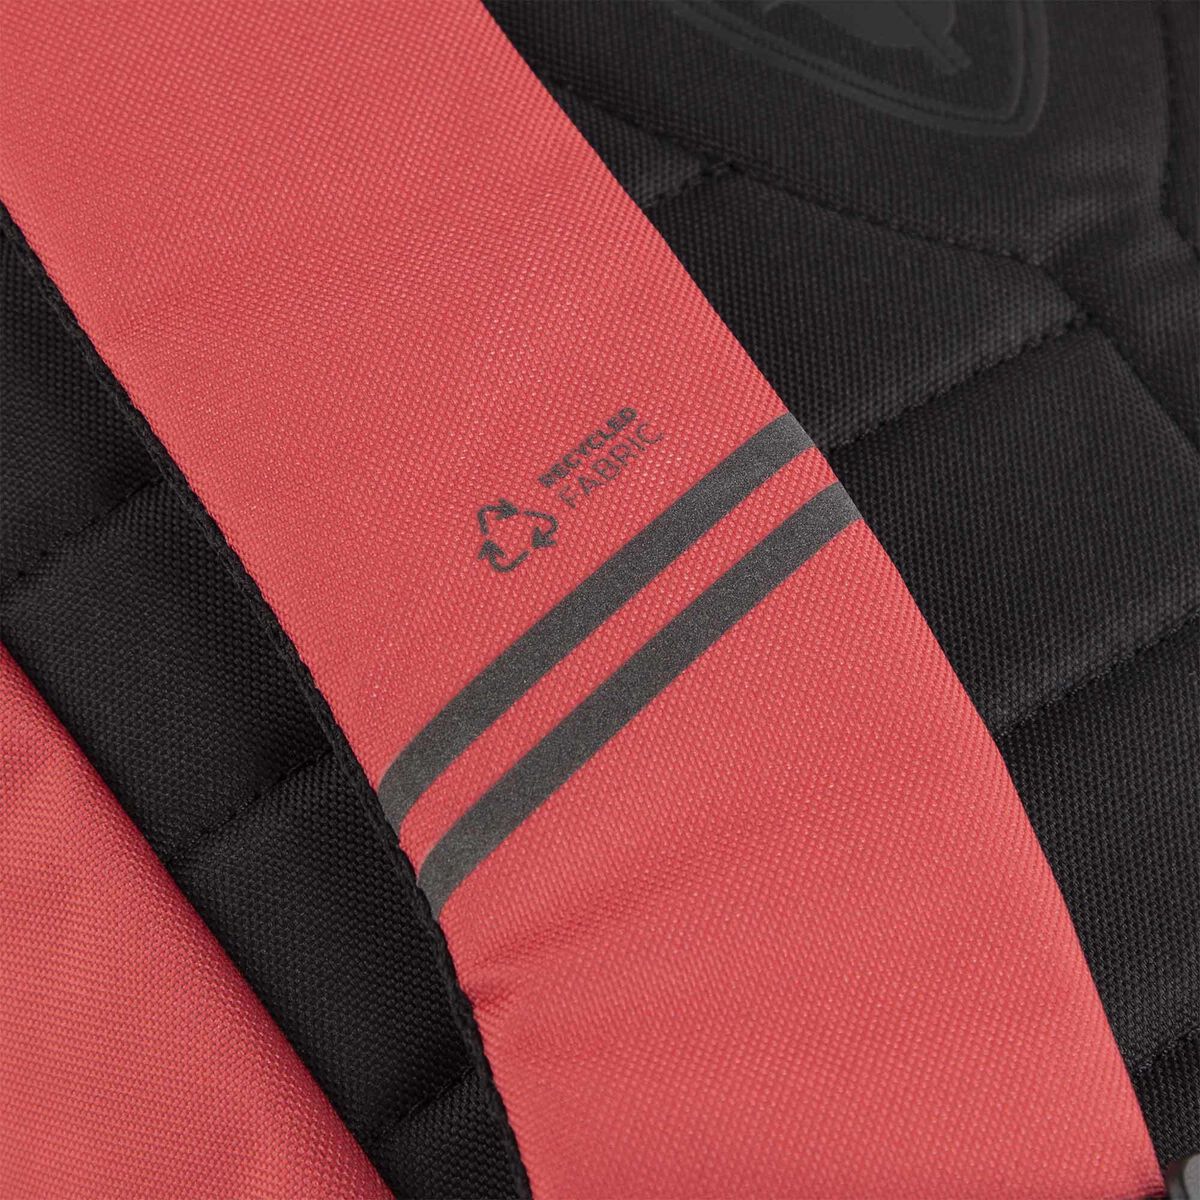 Unisex 20L pink Commuter backpack